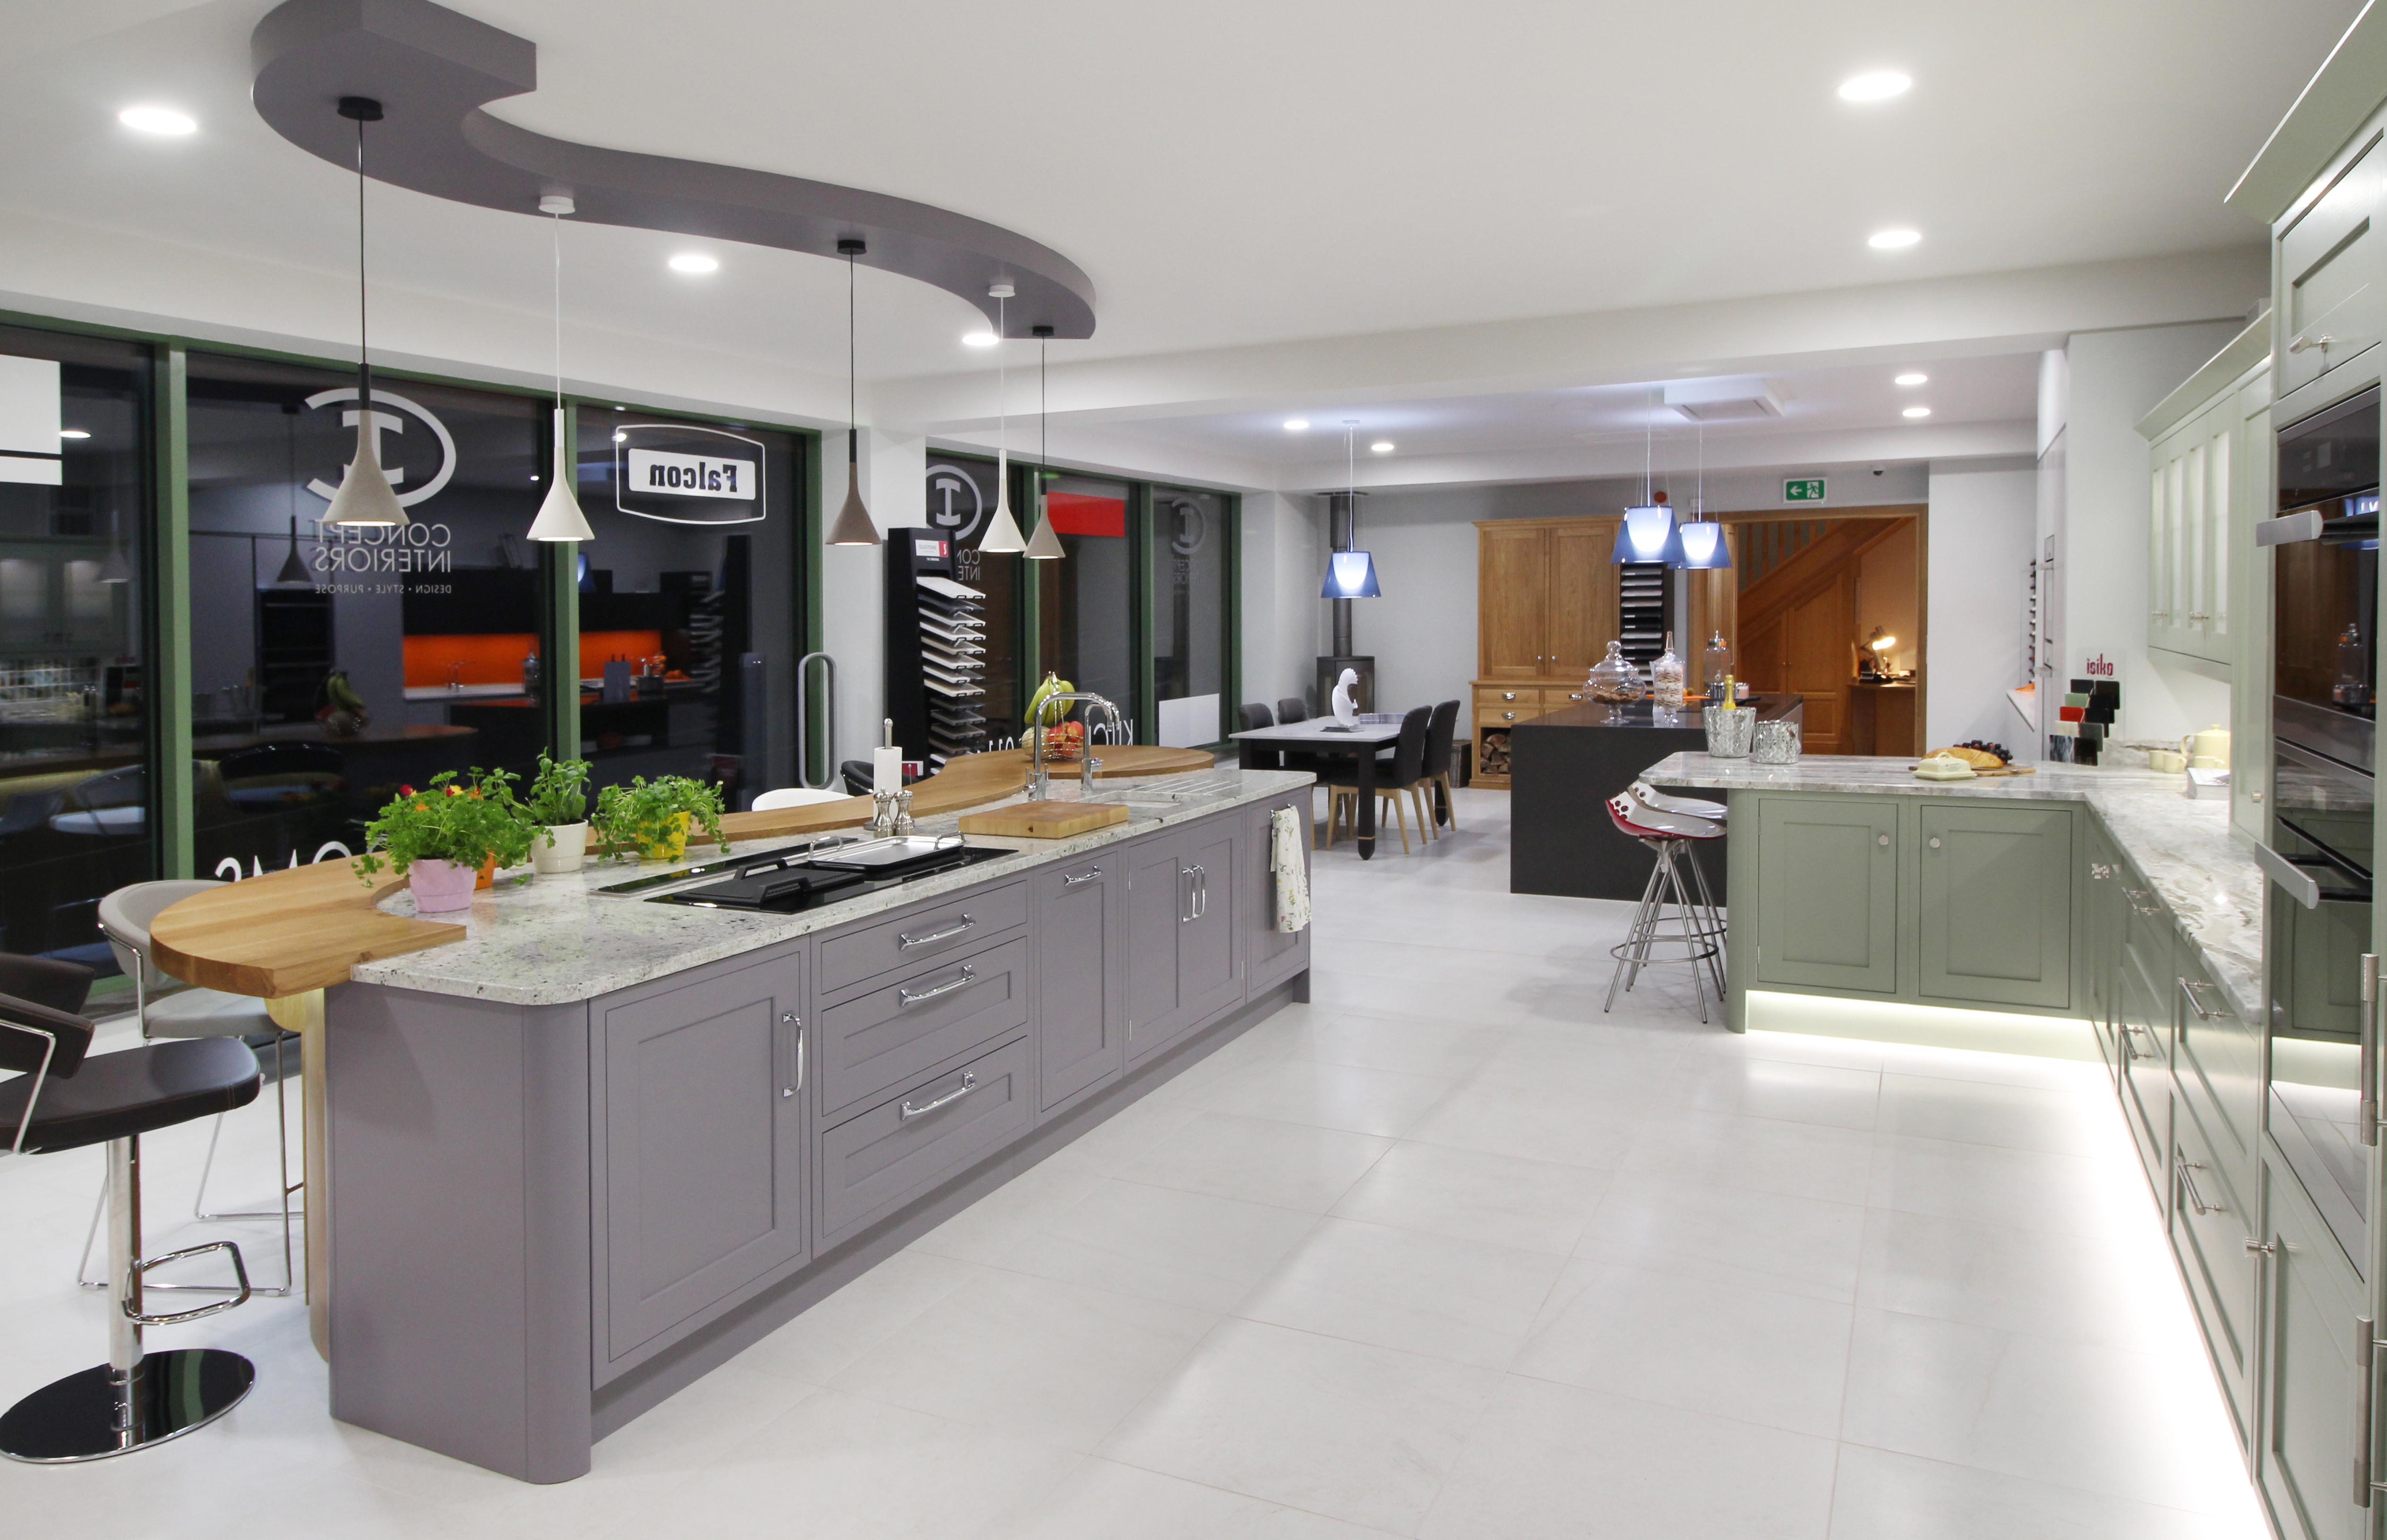 kitchen design showroom massachusetts